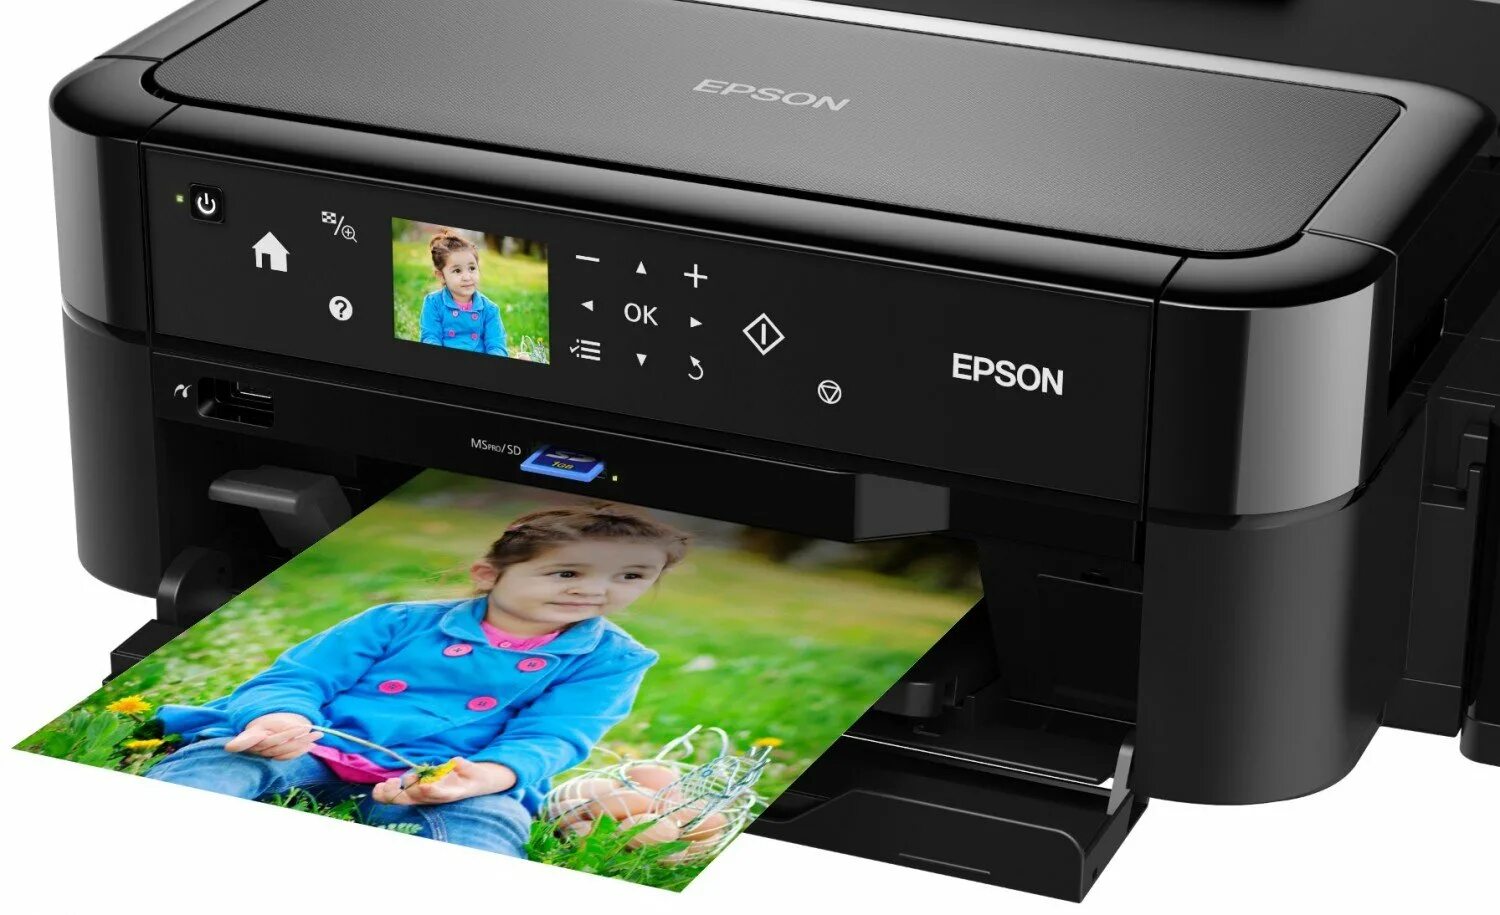 Принтер струйный Epson l810. Принтеры Эпсон 810. Epson 810 принтер цветной. Epson принтер Epson l810. Купить принтер эпсон л